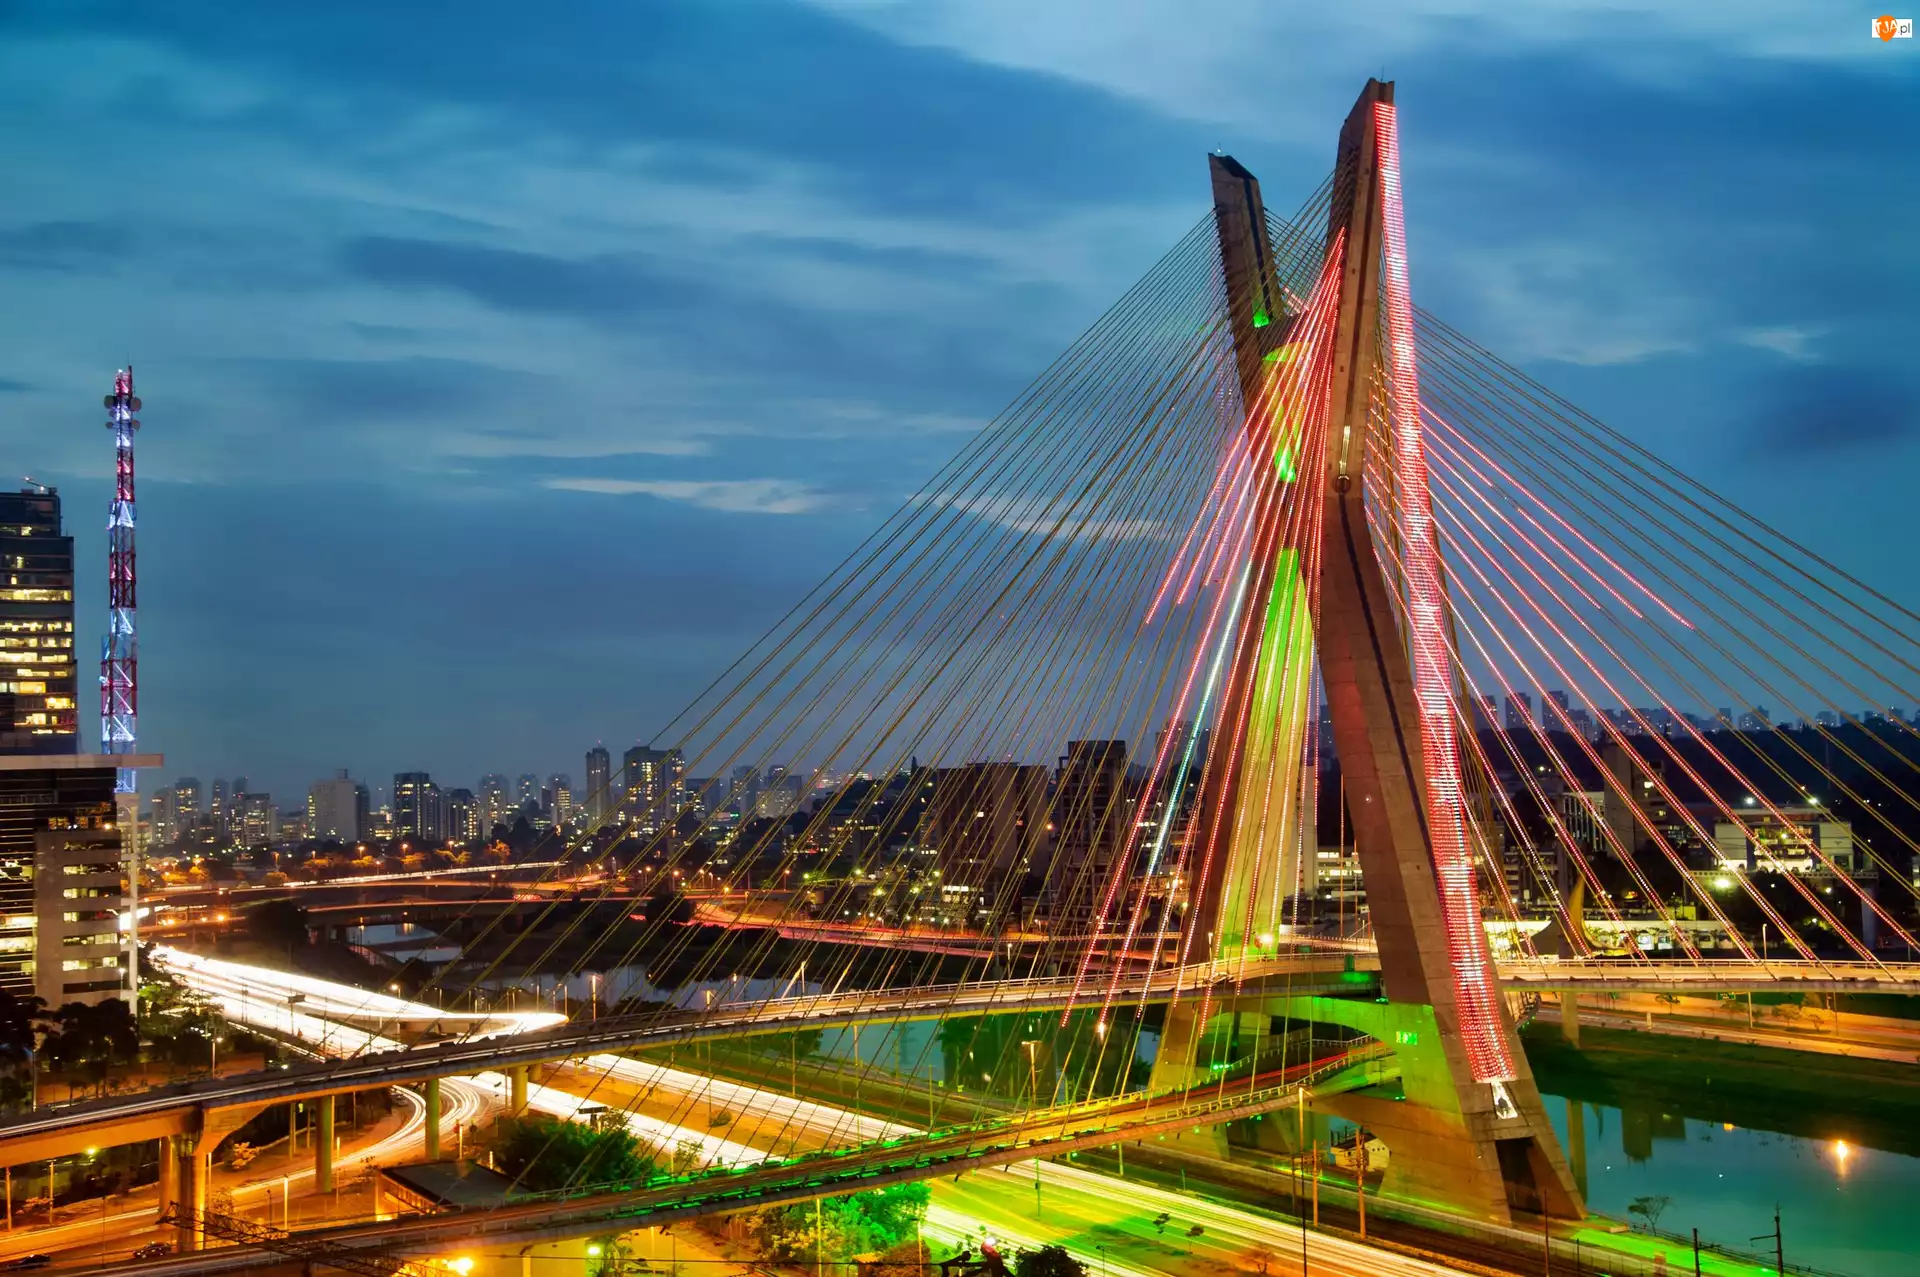 Brazylia, Most, Sao Paulo